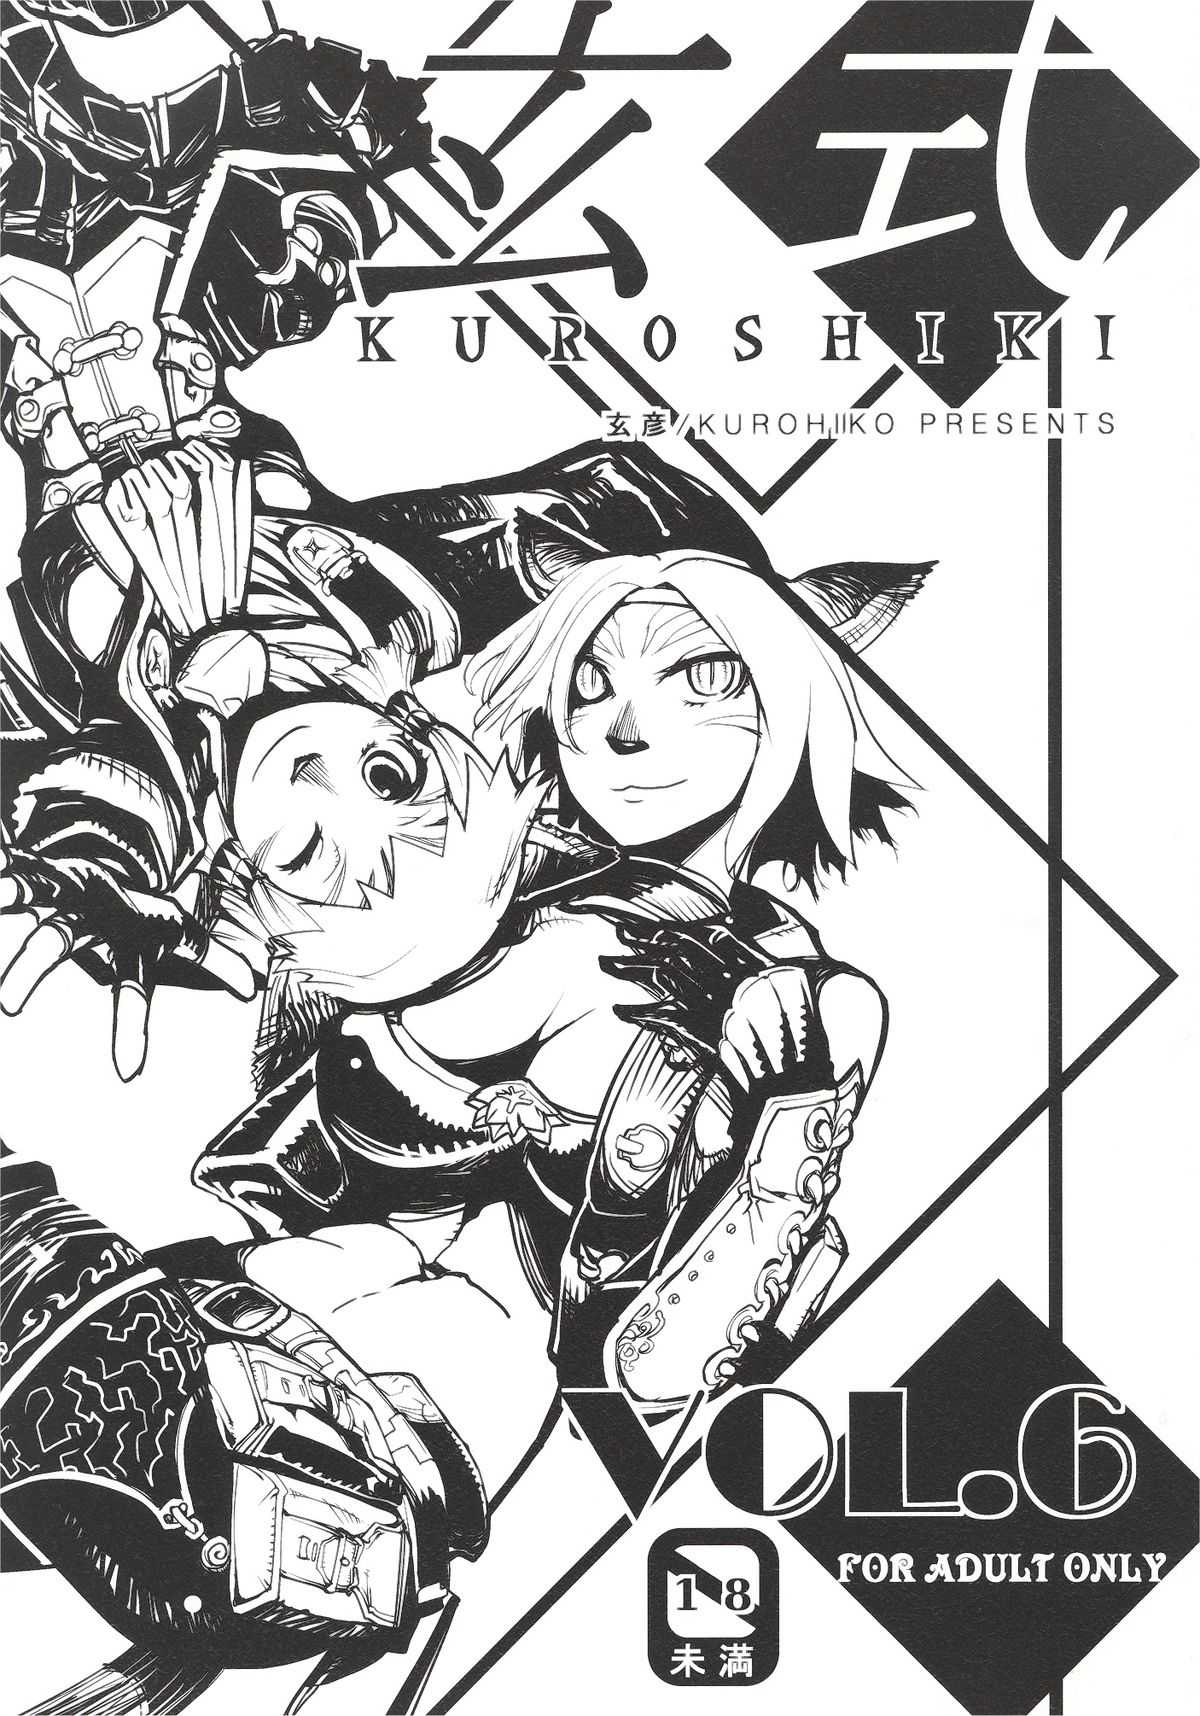 [Kurohiko] Kuroshiki 6 (Final Fantasy XI) 